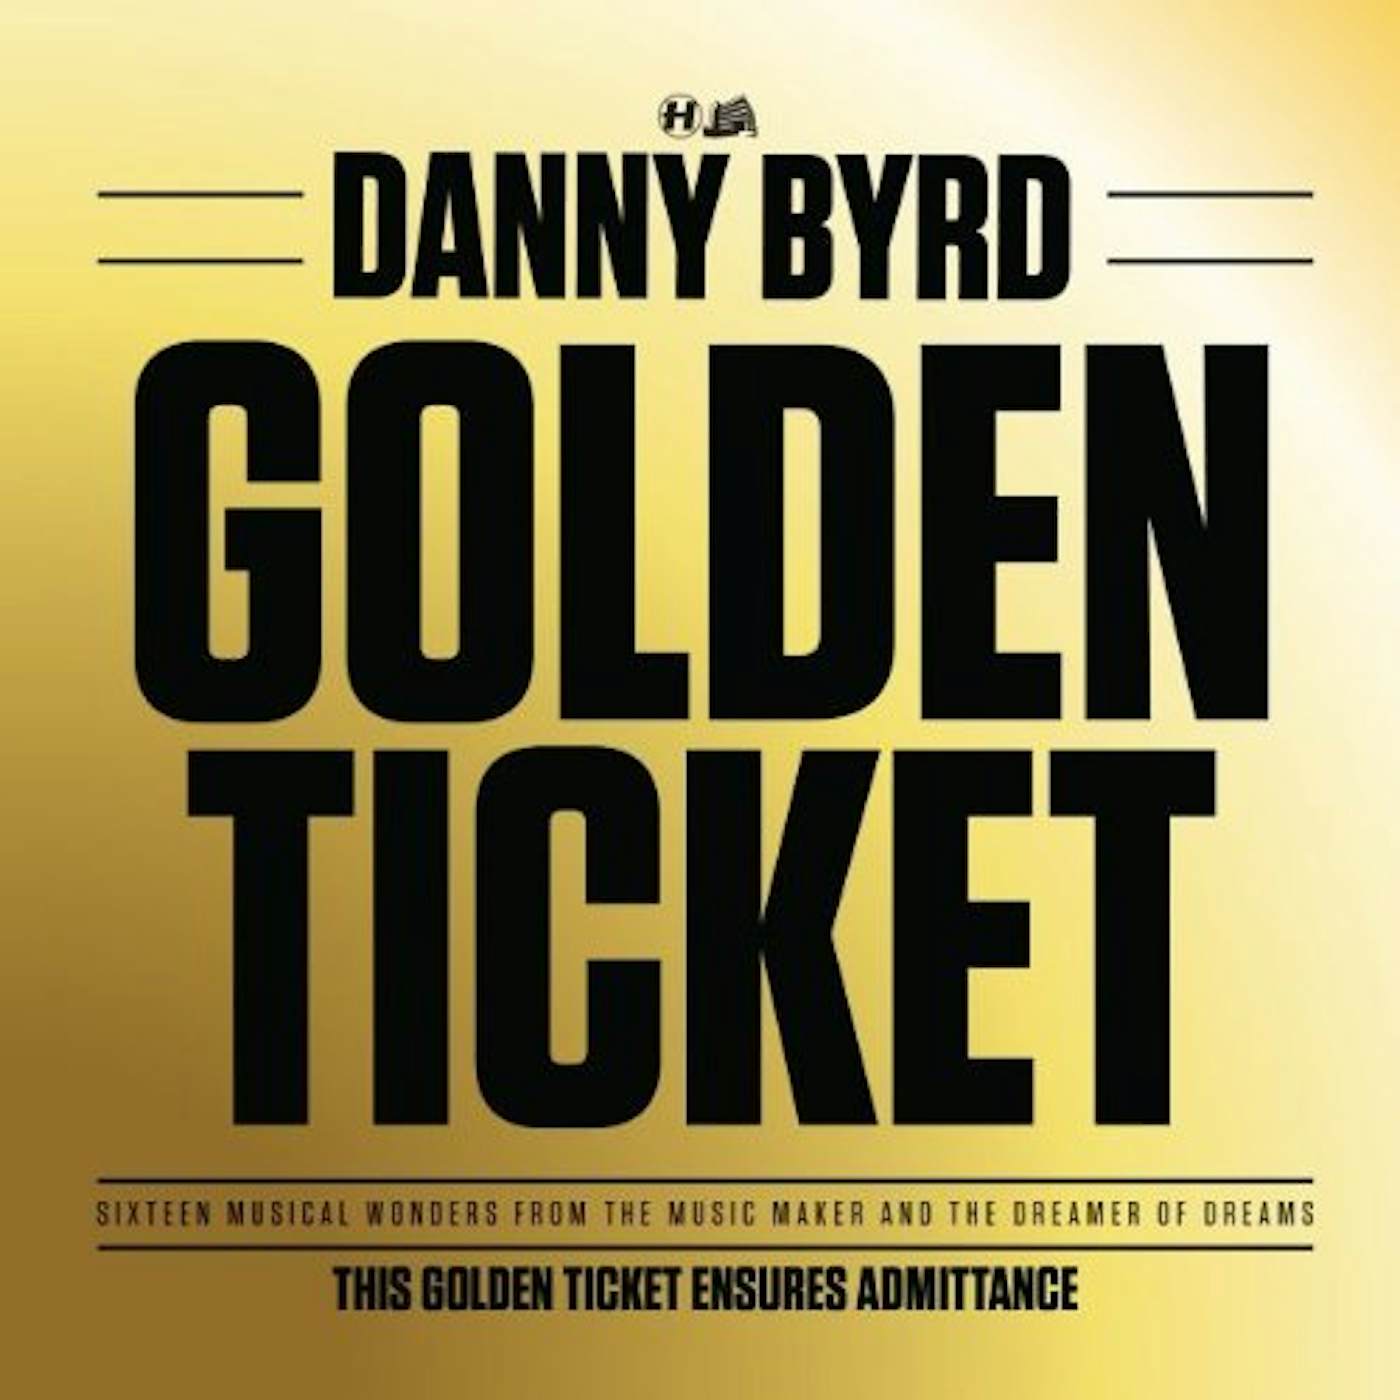 Danny Byrd Golden Ticket Vinyl Record